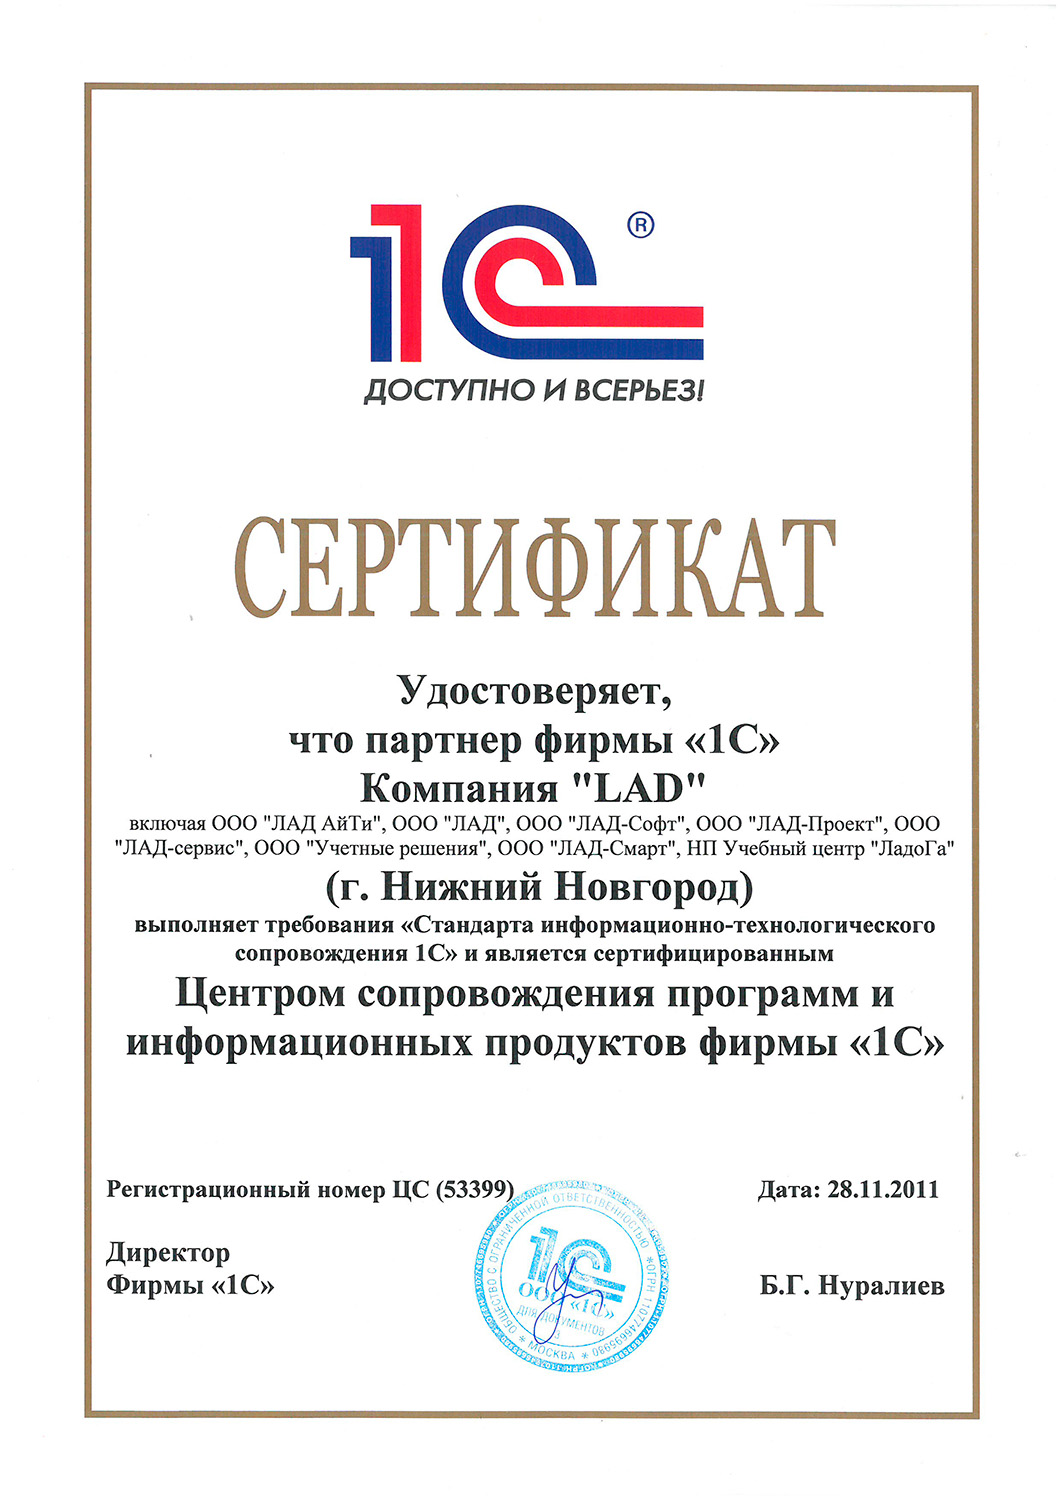 Сертификат компании Лад - Центр сопровождения программ и информационных продуктов фирмы «1С»